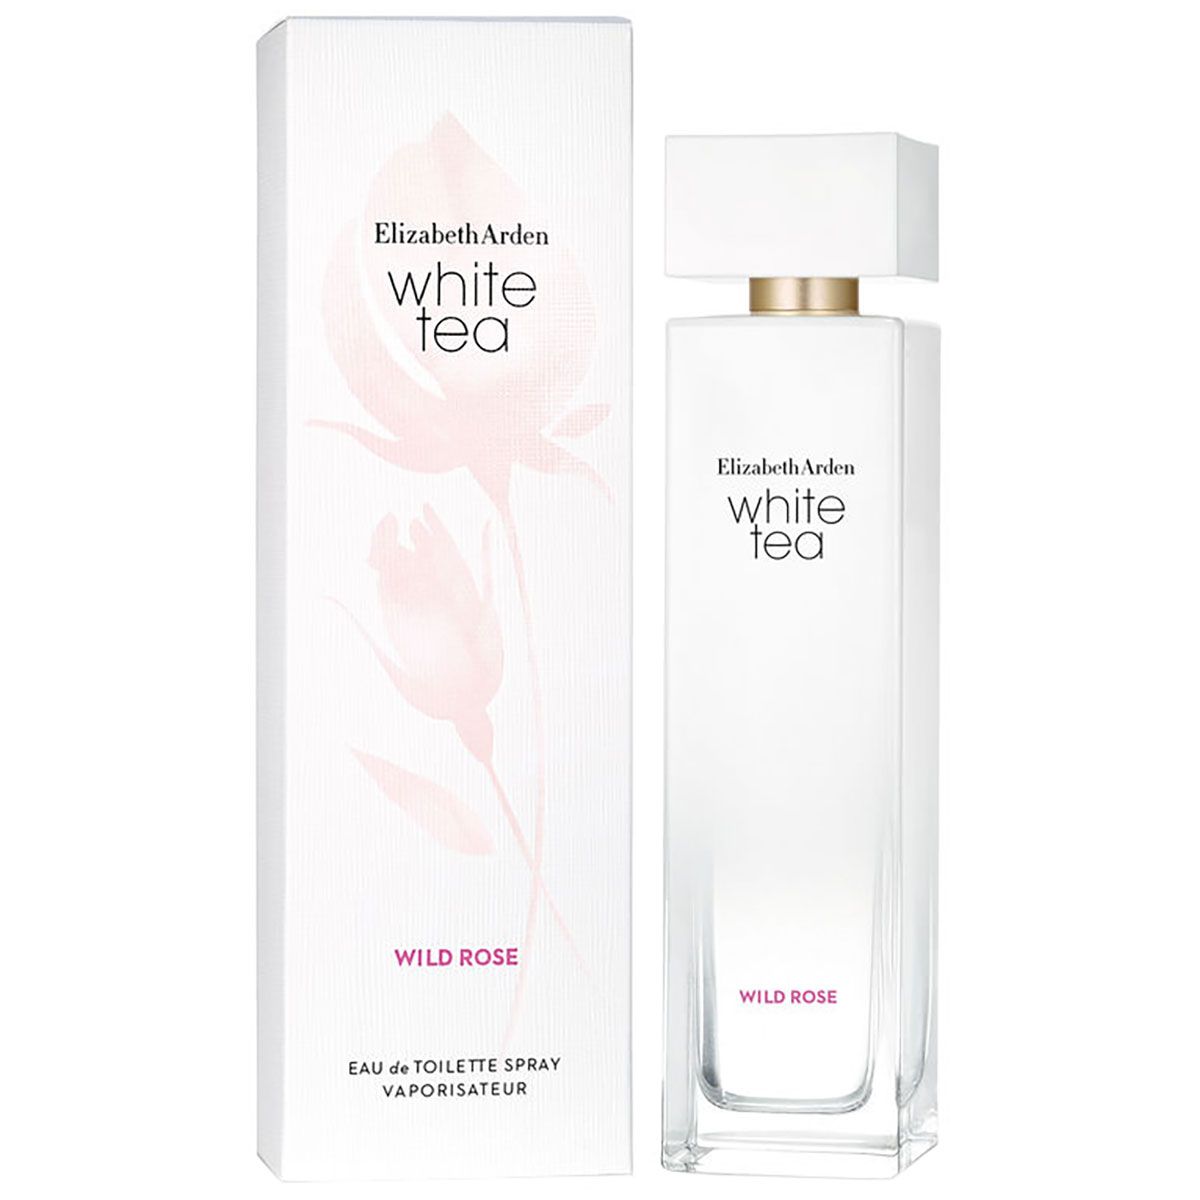 White Tea Wild Rose 100 ml Elizabeth Arden EdT